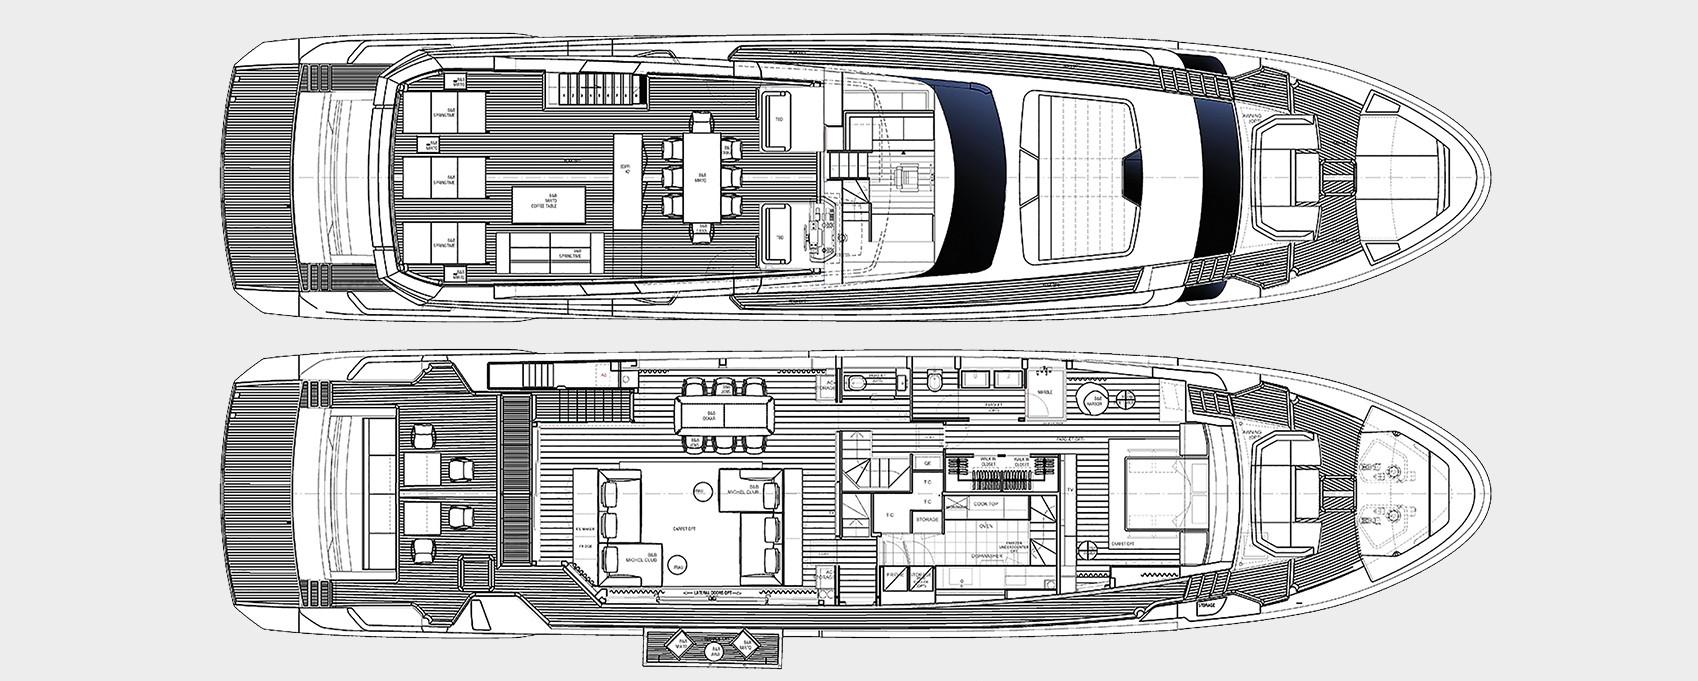 noor II yacht charter layout